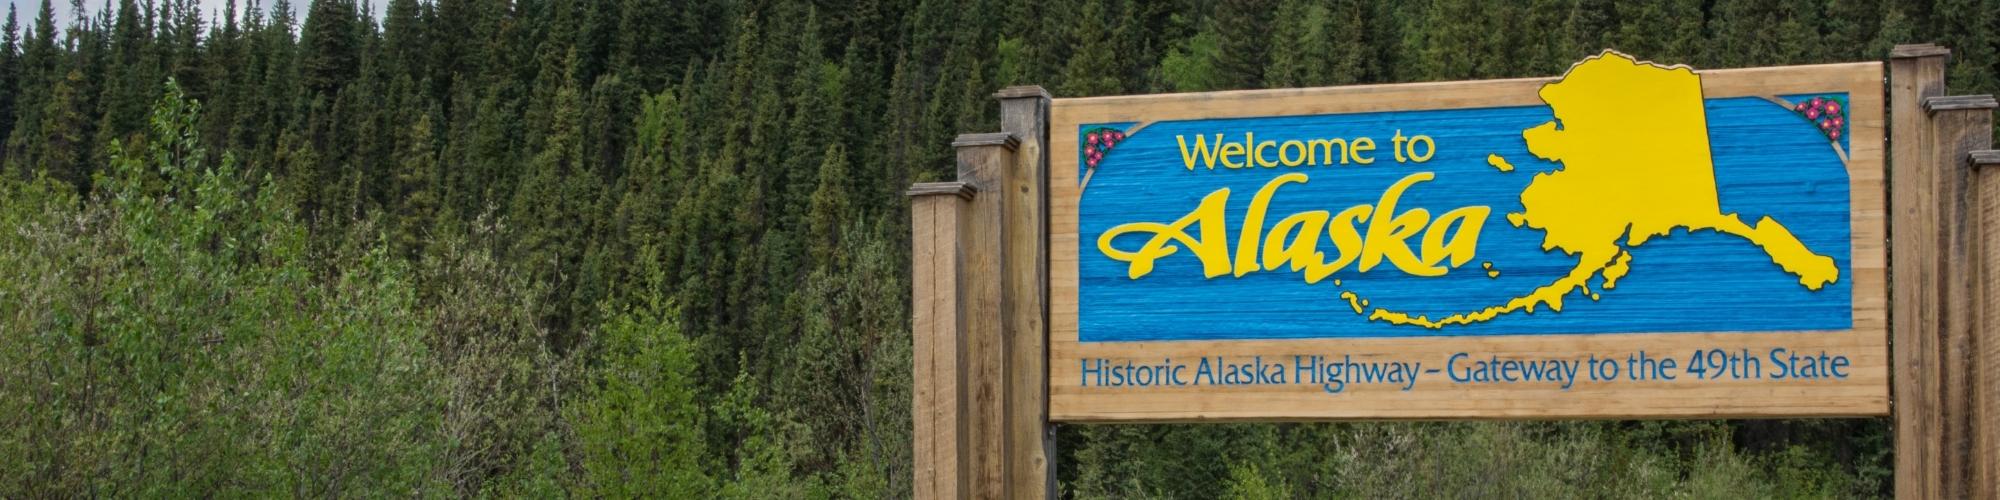 Welcome to Alaska - Rvinyl Installer Directory